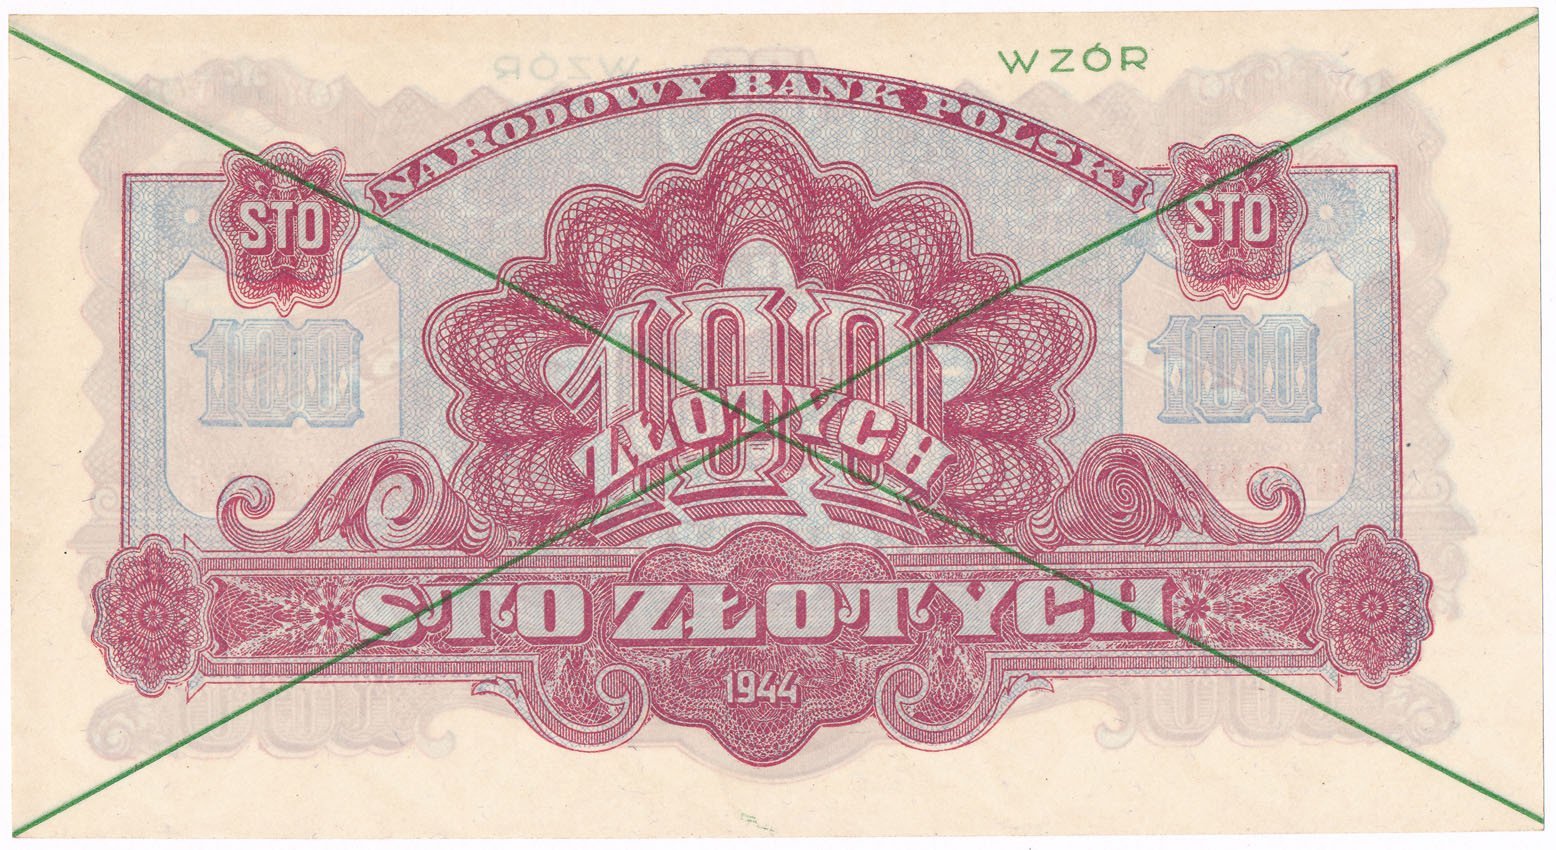 WZÓR. 100 złotych 1944 Zielony, RZADKOŚĆ (R6)